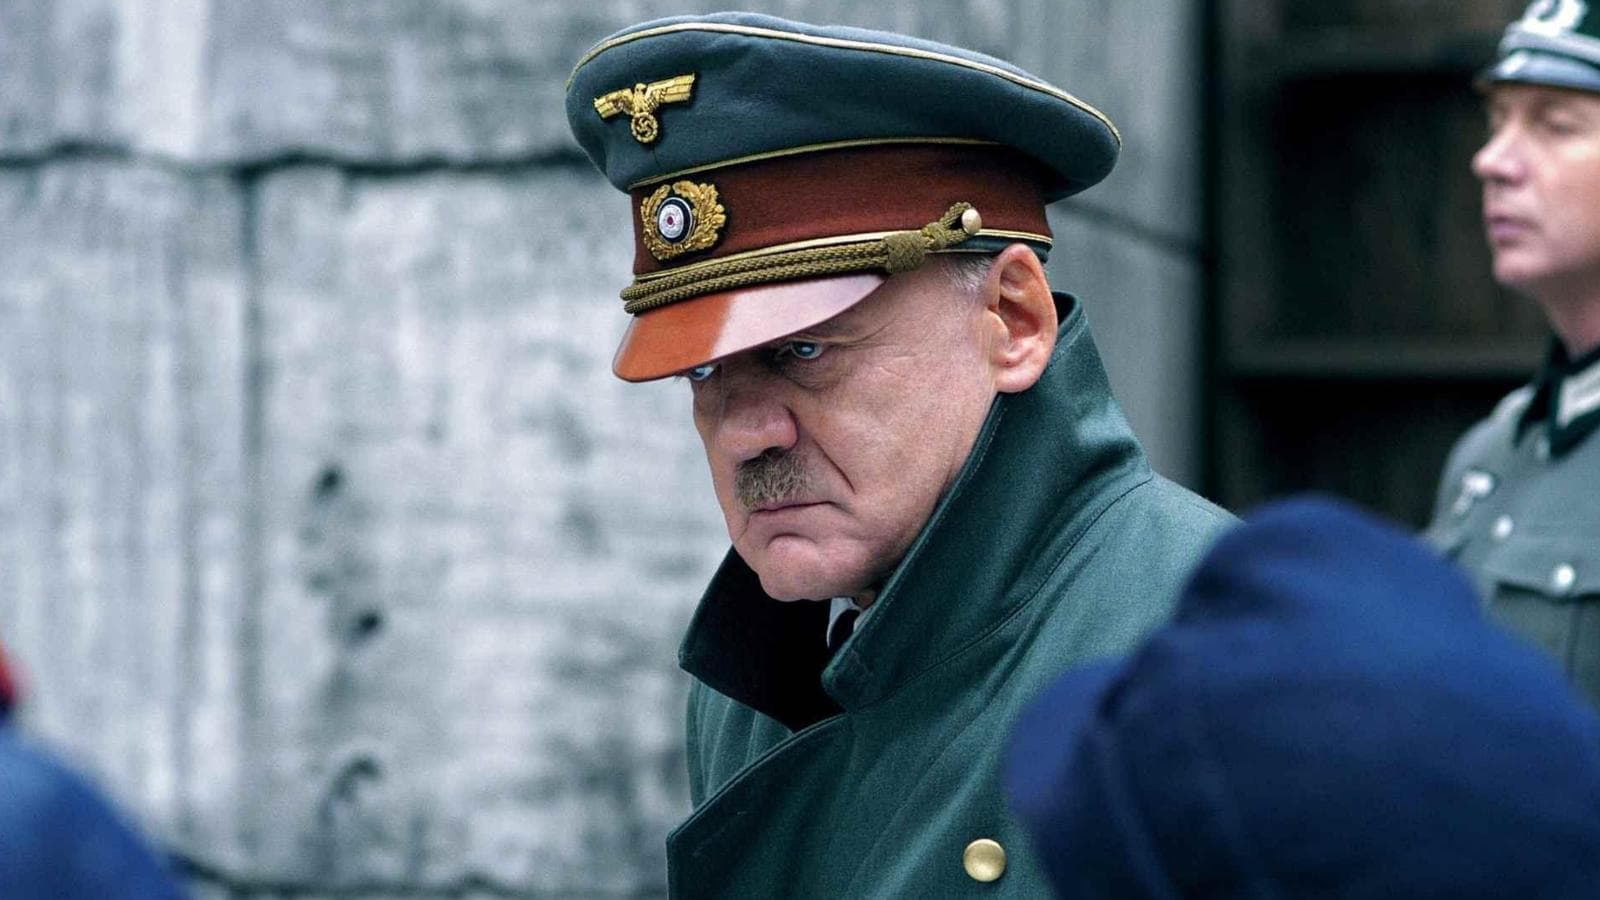 “La caduta - Gli ultimi giorni di Hitler”, alle 21.20 su Rai 3: ecco la trama del film con Bruno Ganz